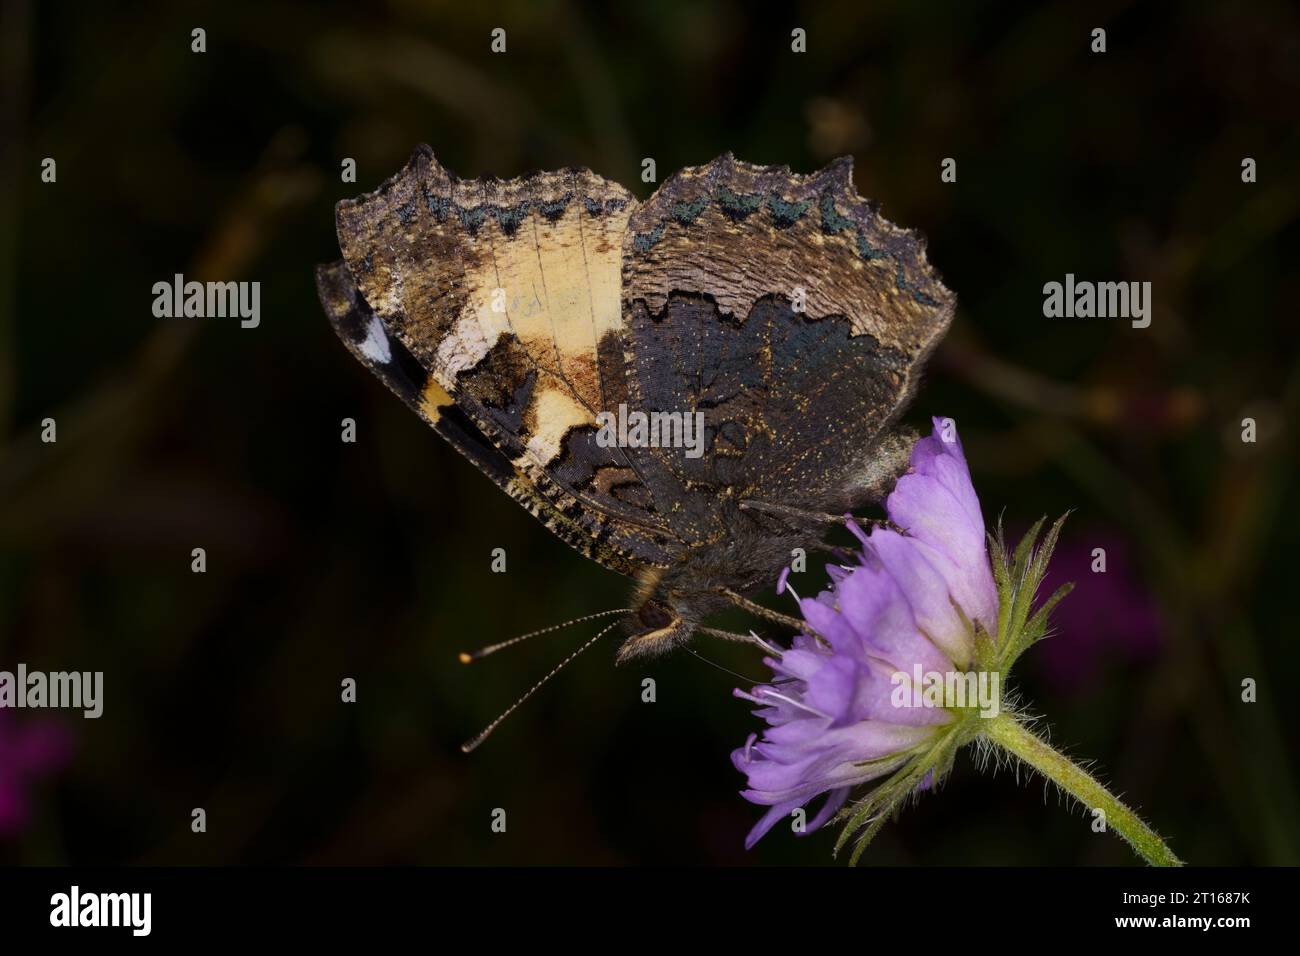 Aglais urticae famille Nymphalidae genre aglais petit papillon écaille de tortue nature sauvage photographie d'insectes, image, papier peint Banque D'Images